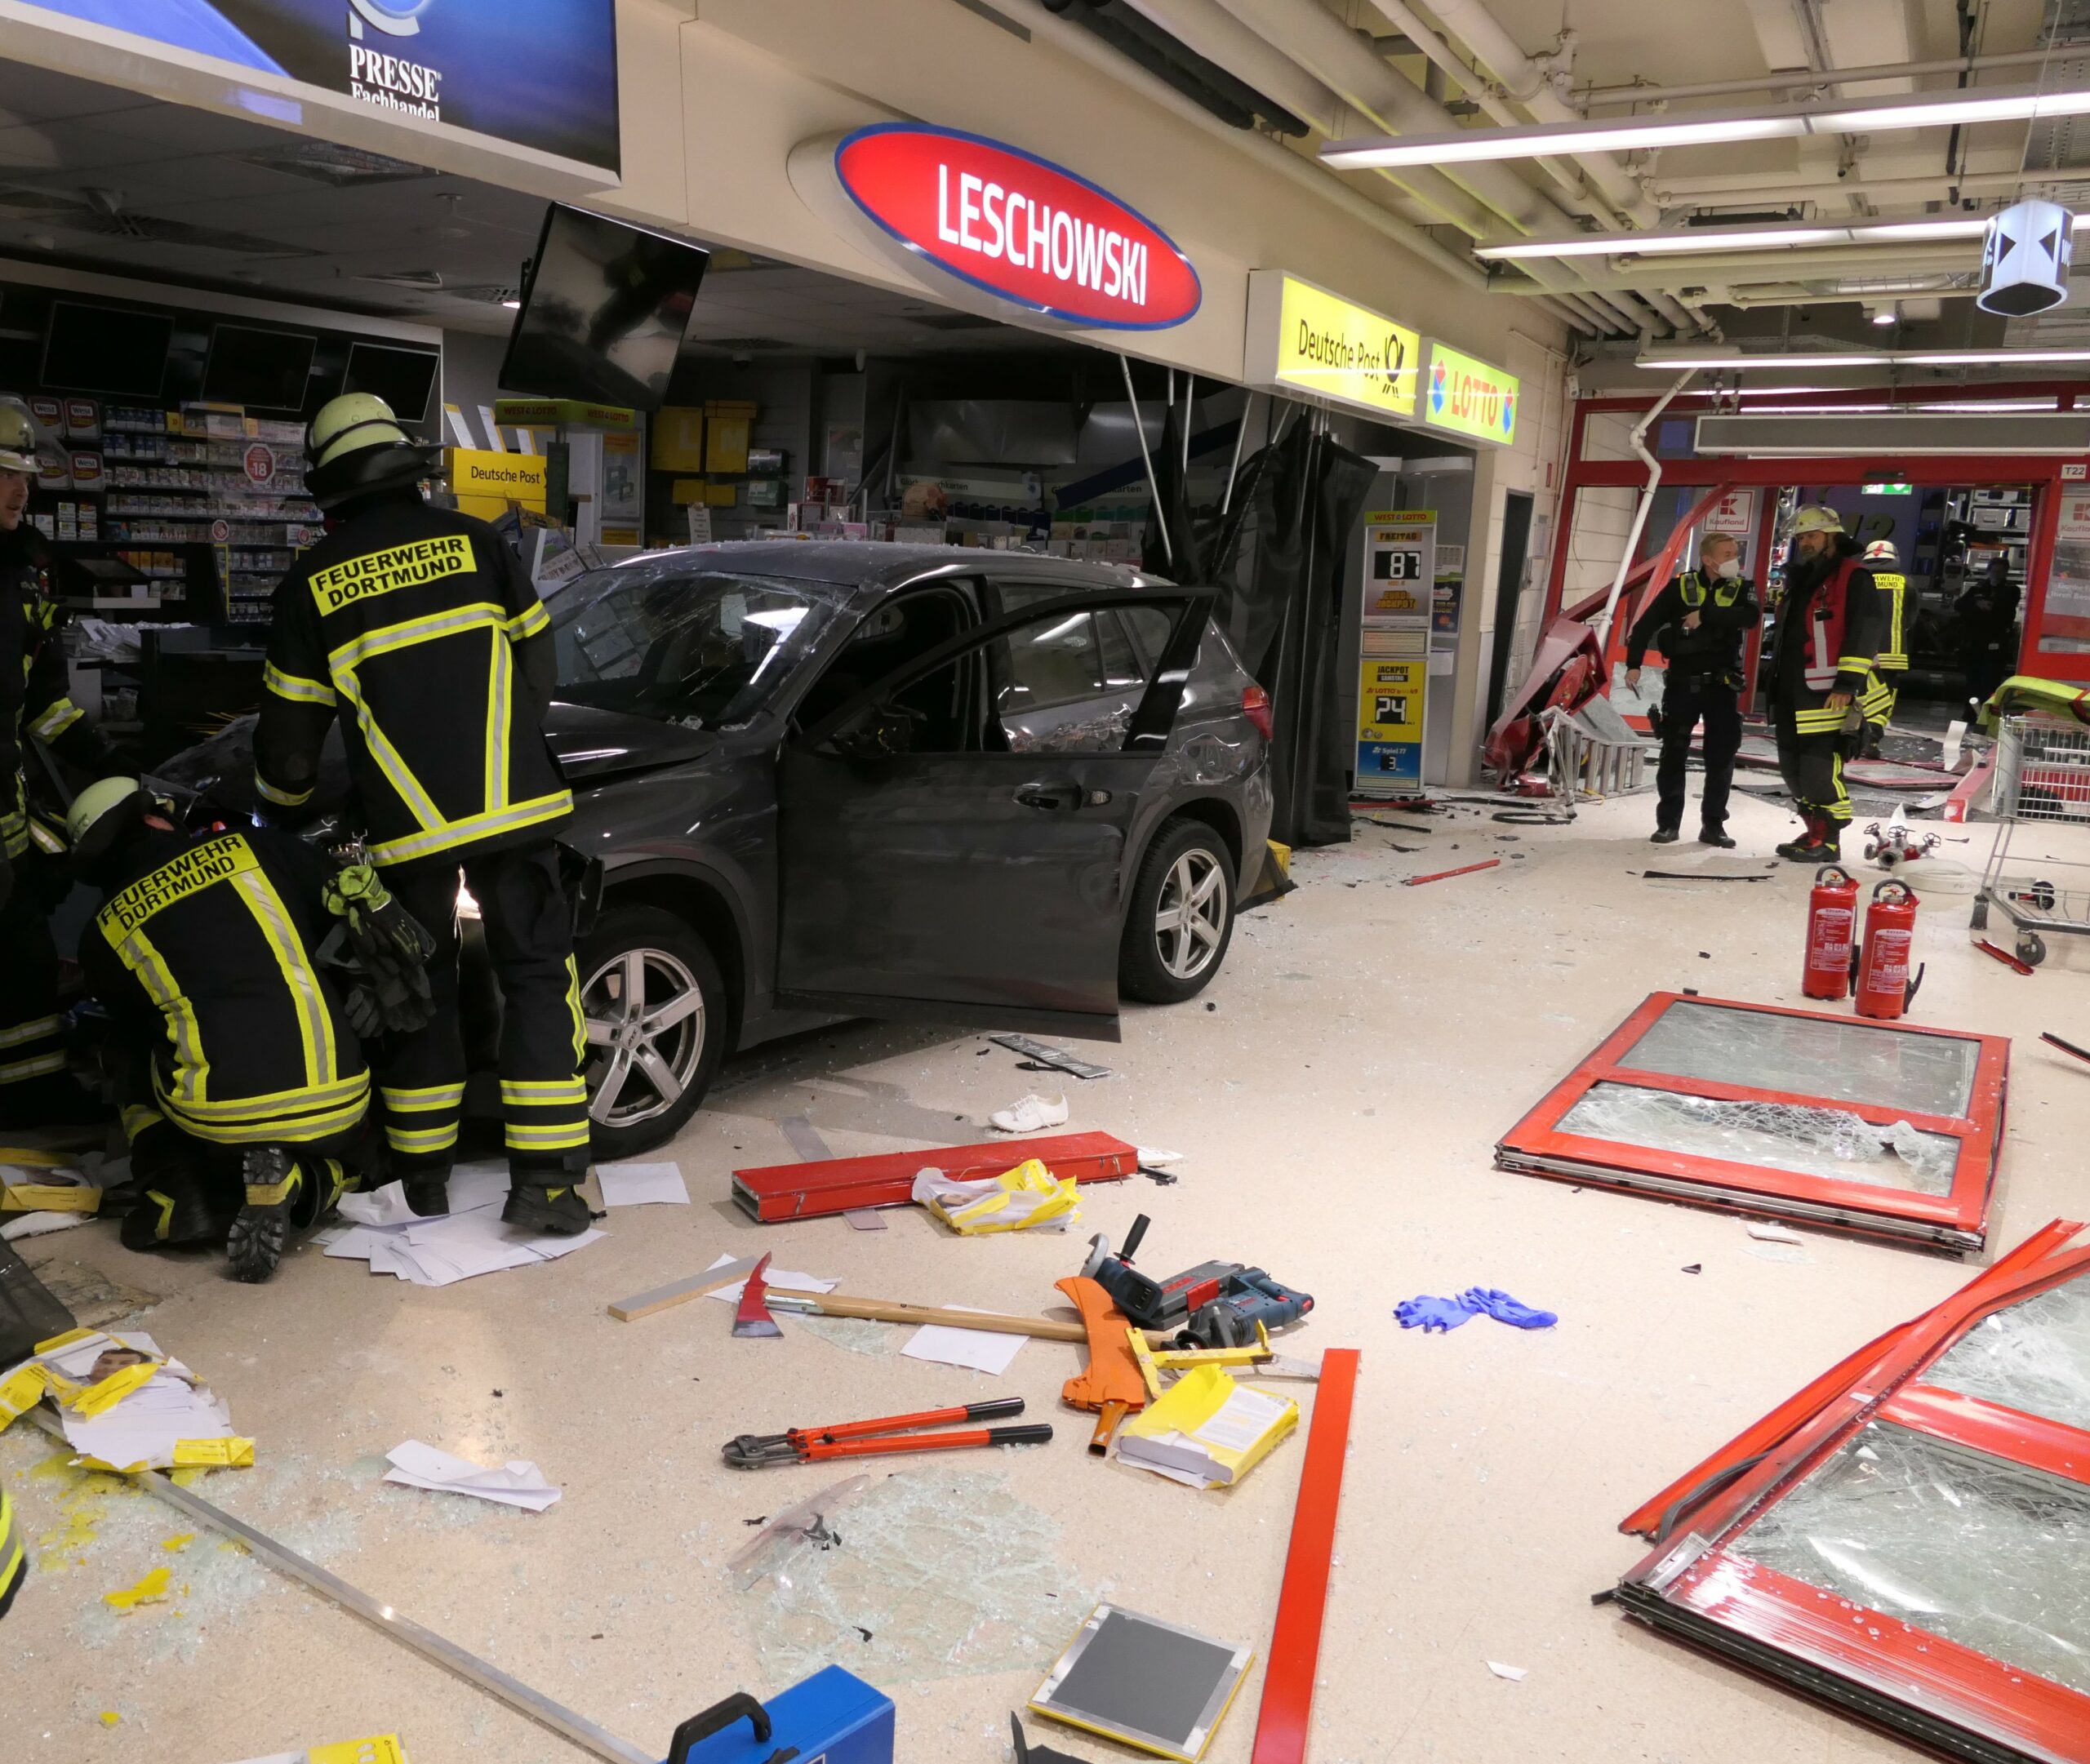 BMW kracht in Geschäft in Aplerbeck – Fassade, Wände, Ladeneinrichtung demoliert, 75.000 € Schaden